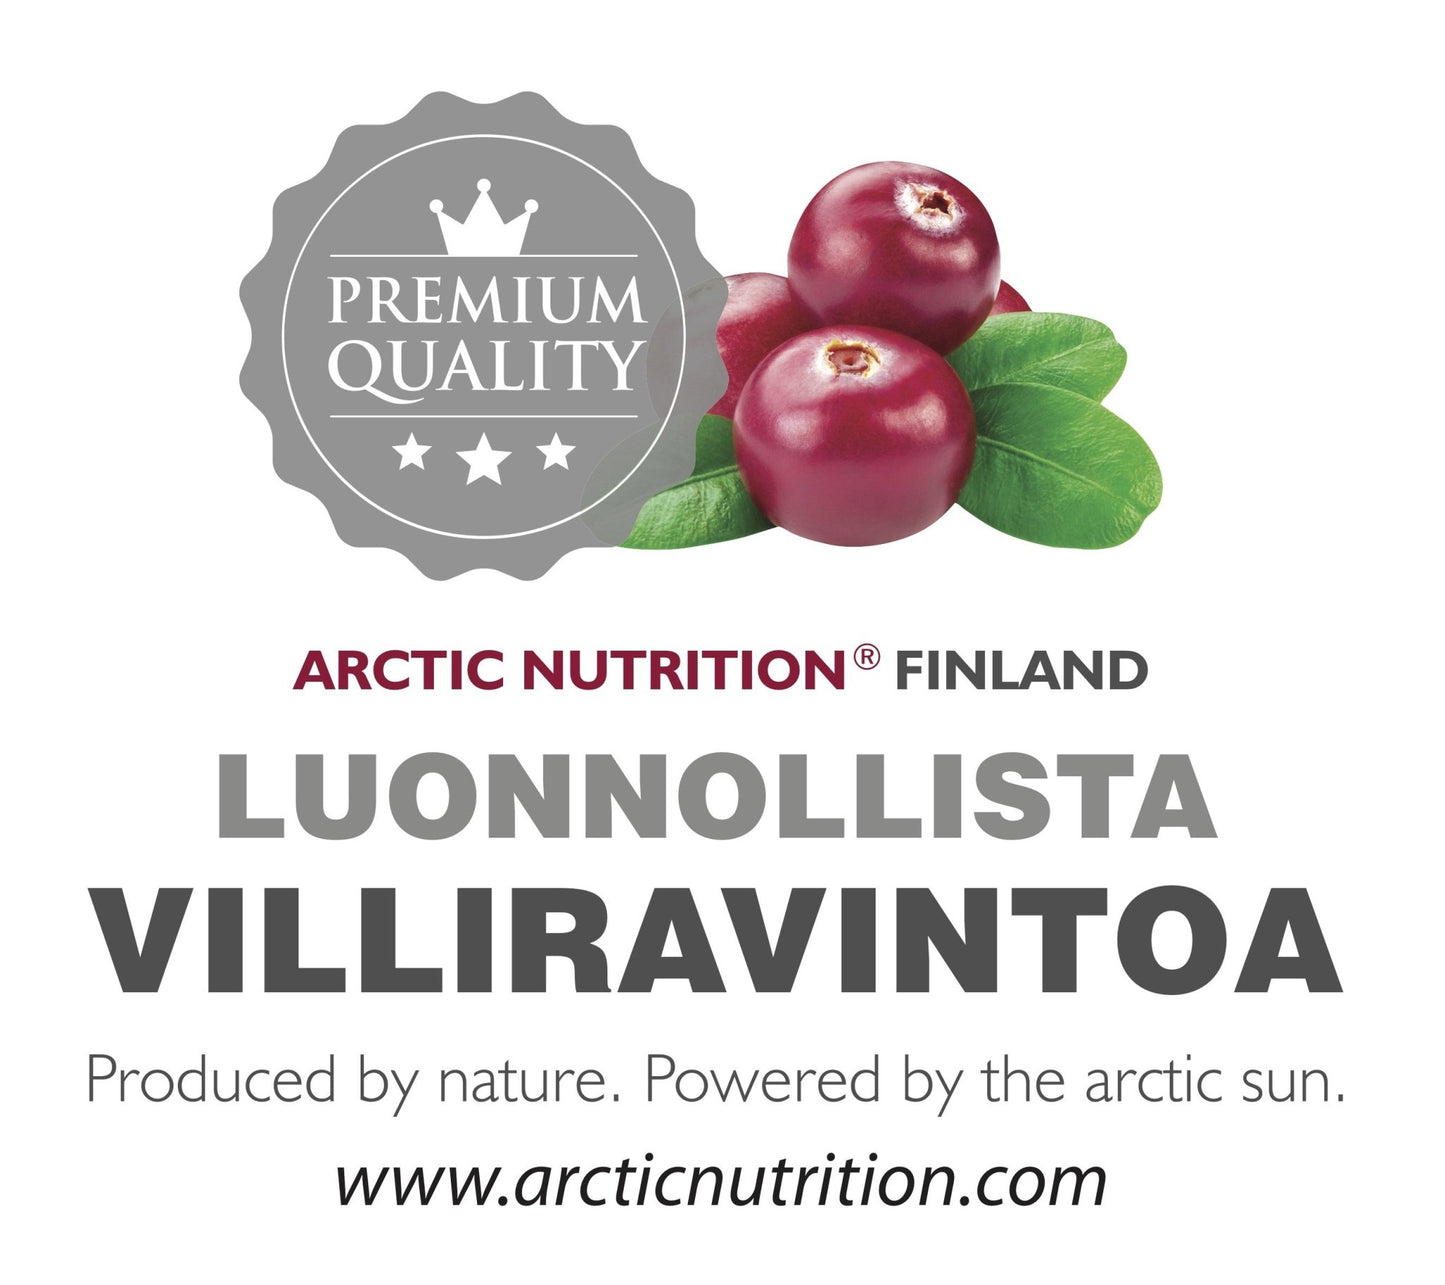 Arctic Nutrition Arctic Oils - Kalaöljy ja marjojen siemenöljyt (Omega 3, 6, 7, 9) - 4Organic Store